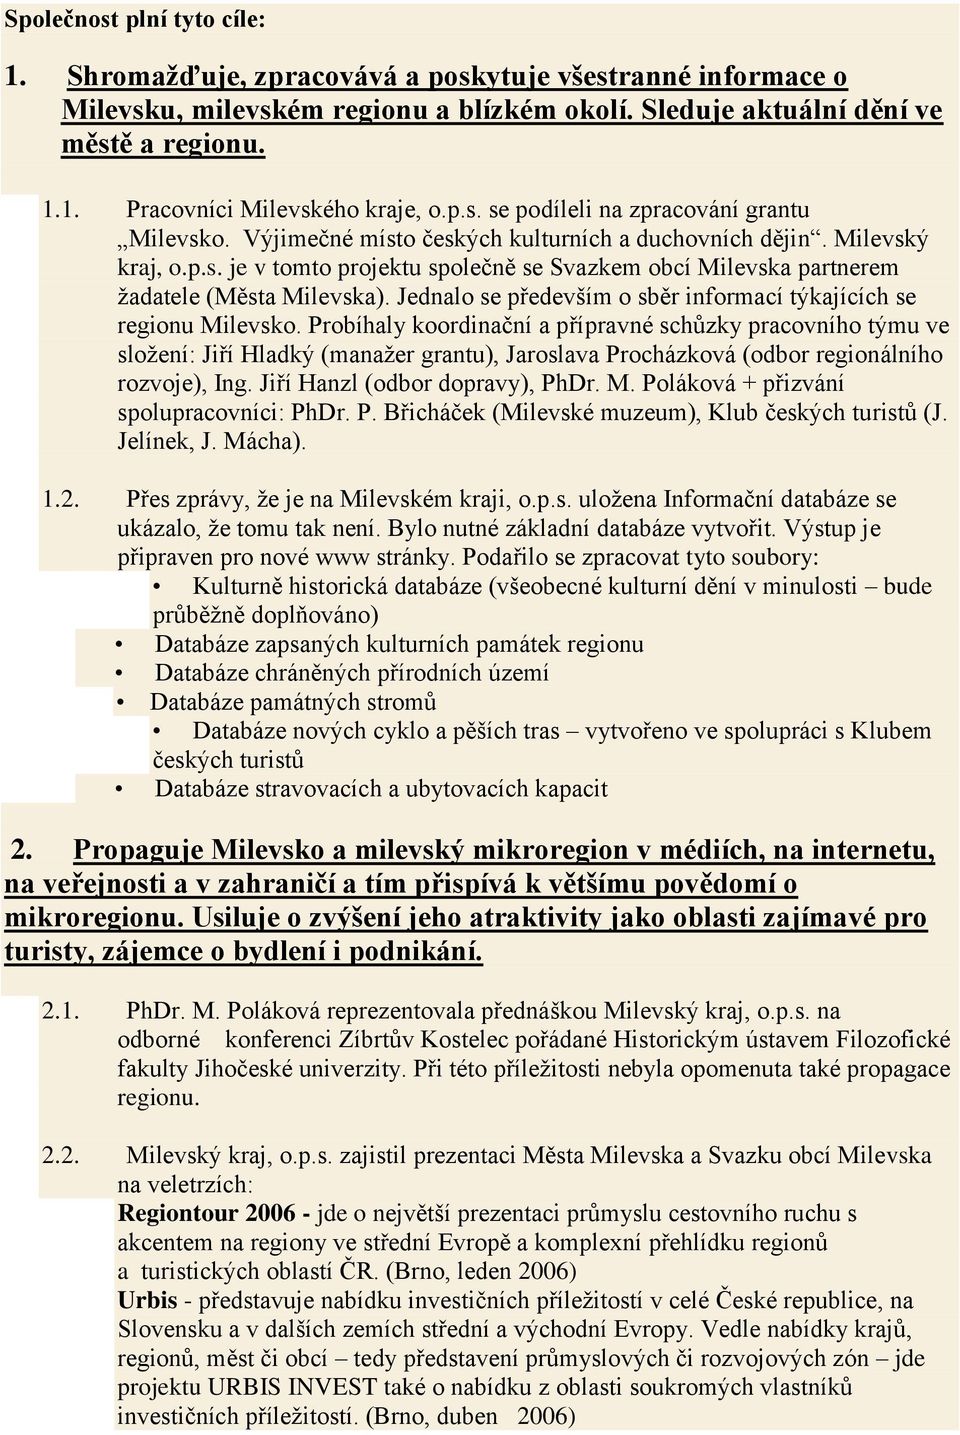 Jednalo se především o sběr informací týkajících se regionu Milevsko.